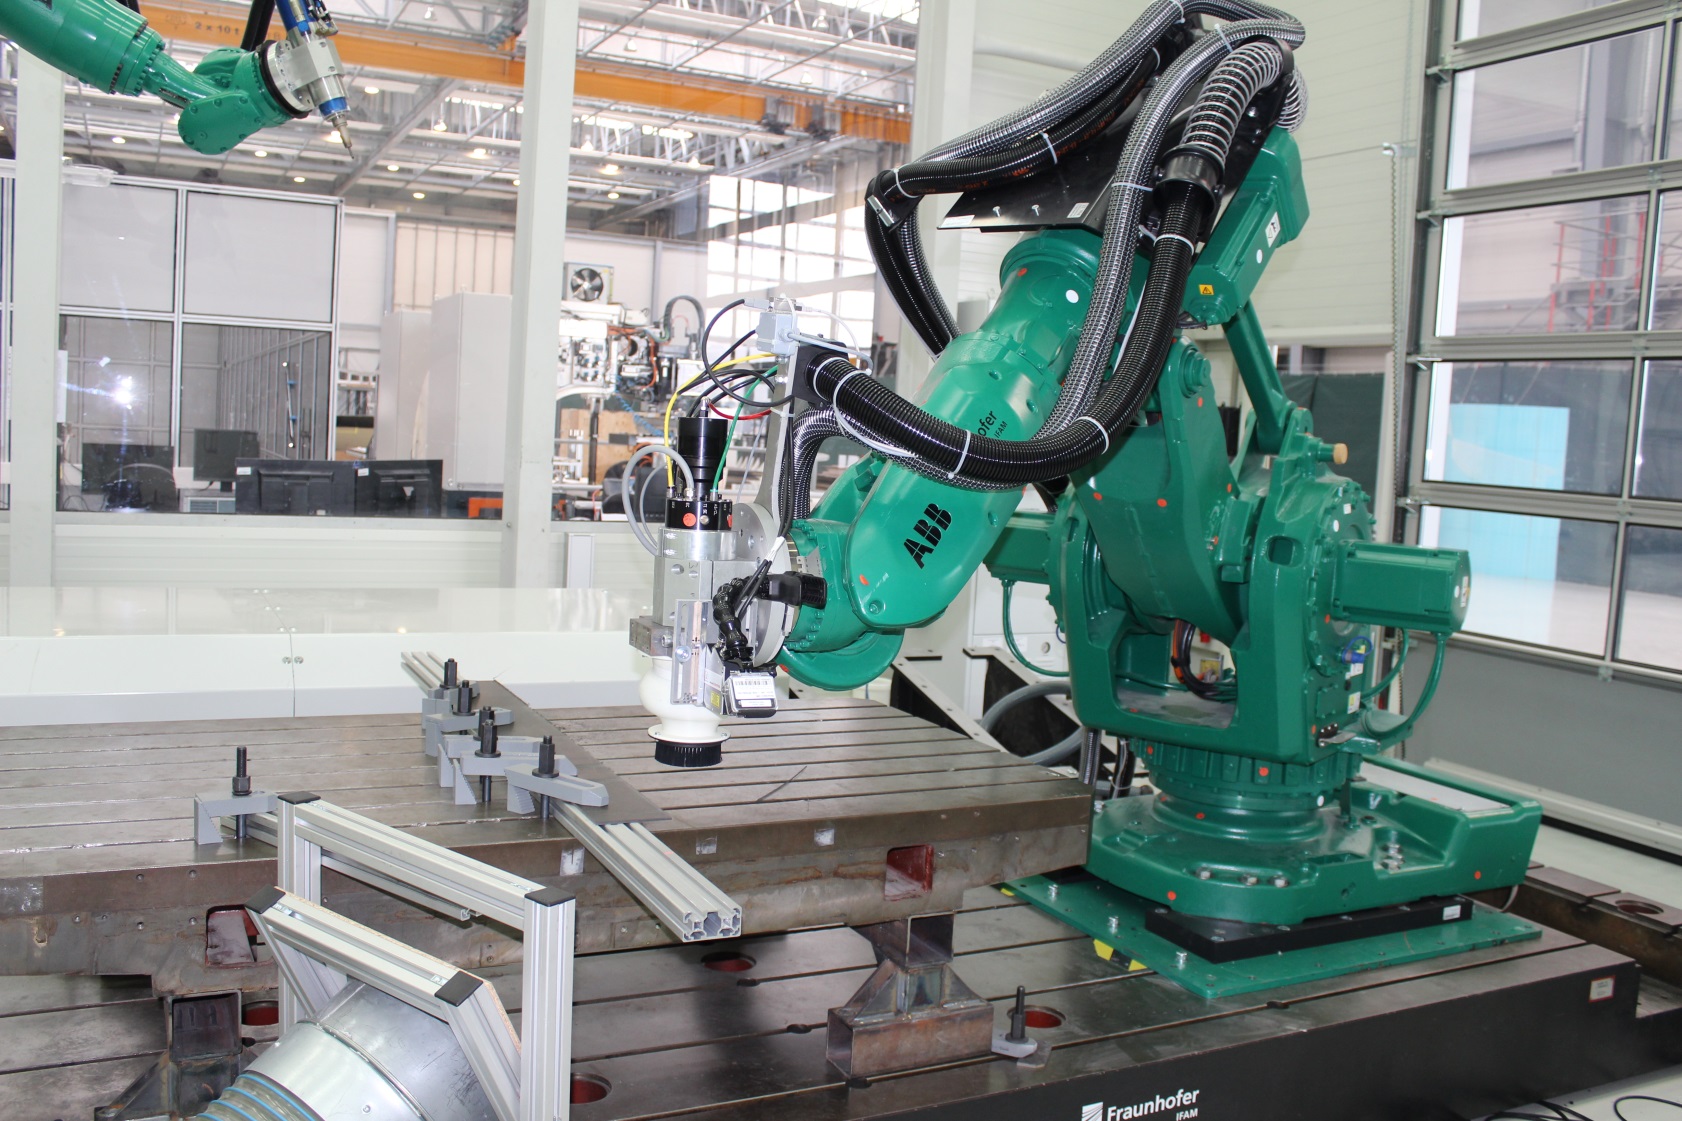 Versuchsaufbau mit Roboter, Fräsendeffektor und integriertem Laser-Triangulations-Liniensensor am Fraunhofer IFAM in Stade.